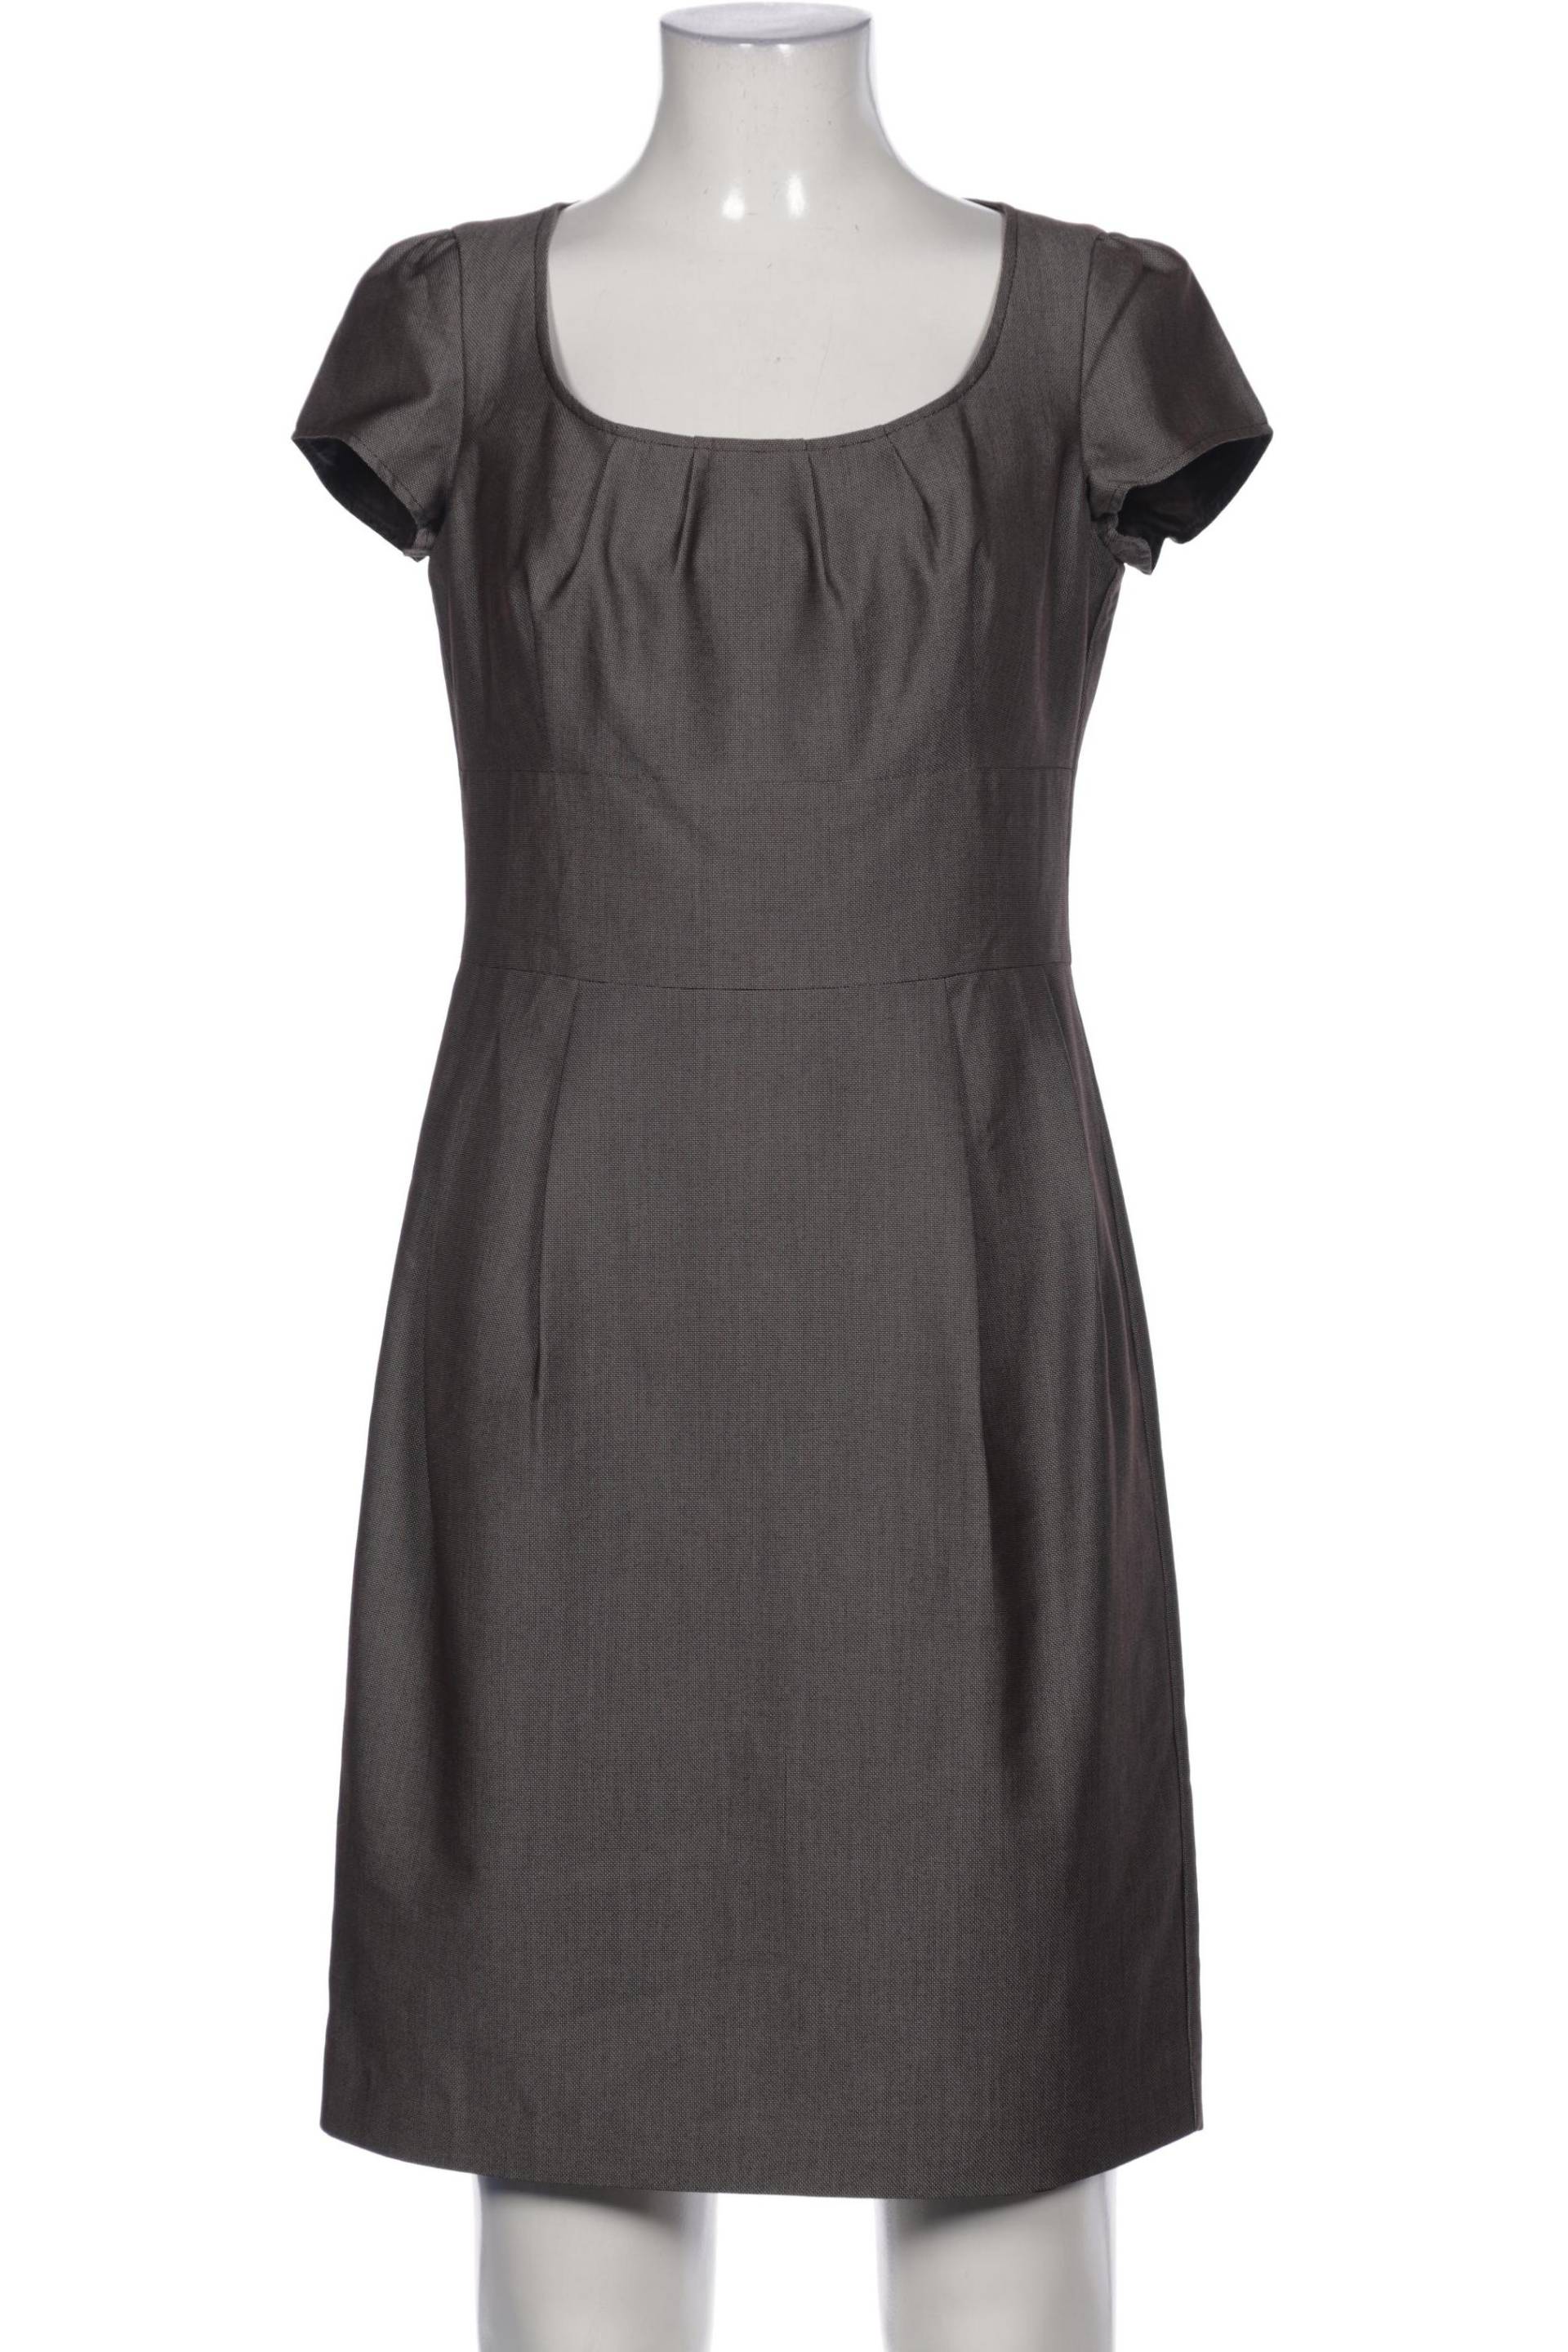 Montego Damen Kleid, grau, Gr. 34 von montego